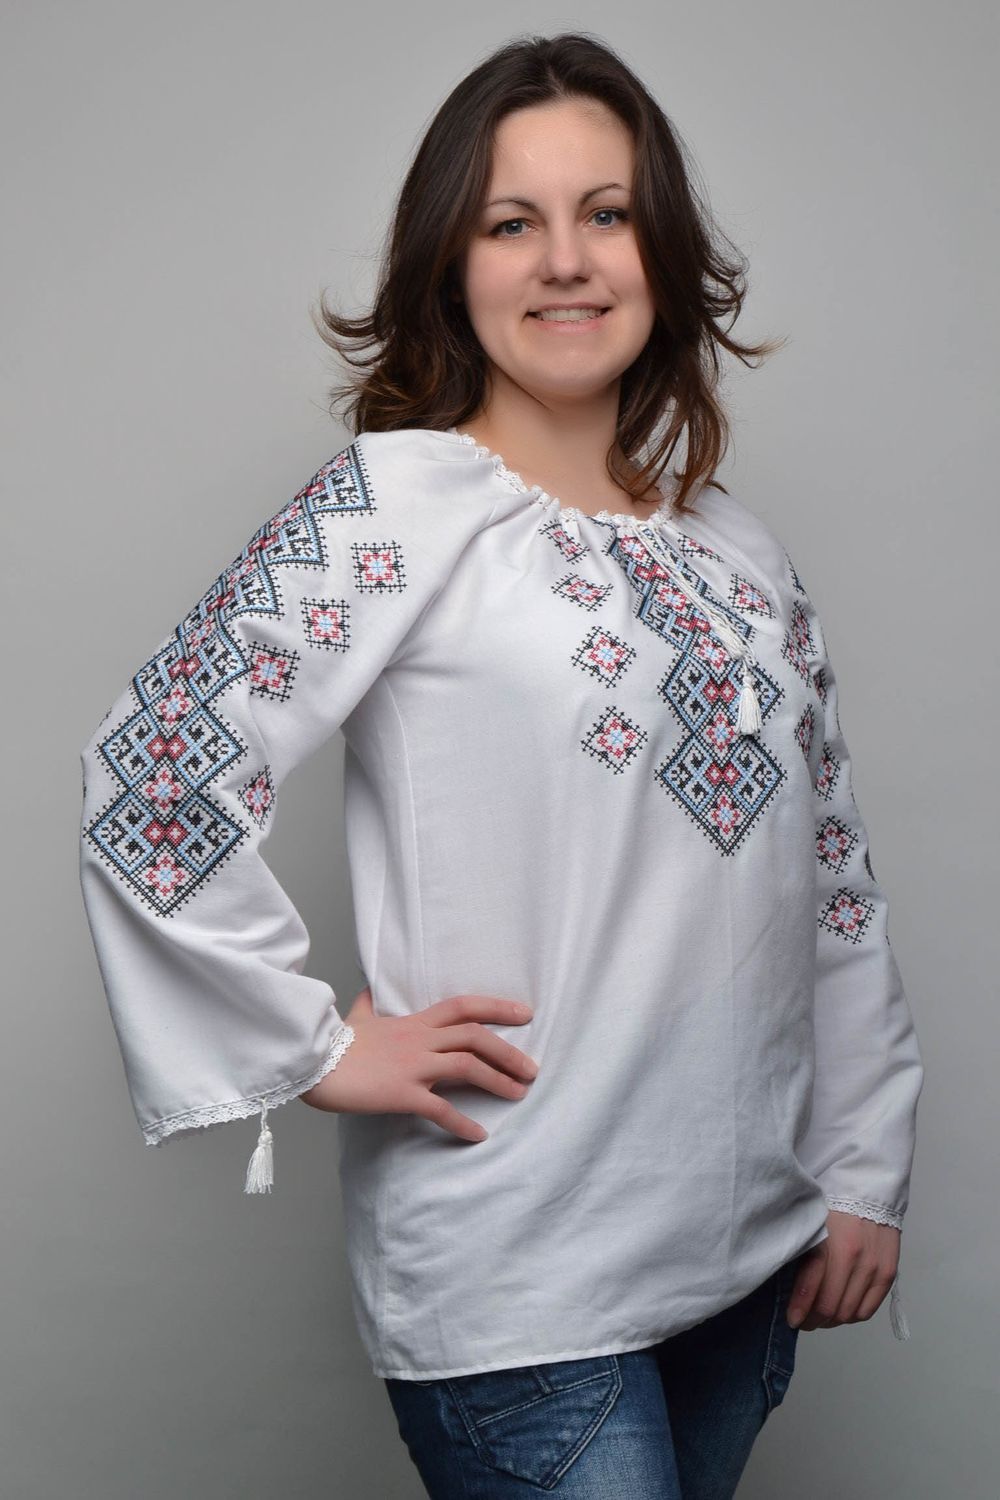 Women's cross stitched shirt photo 1